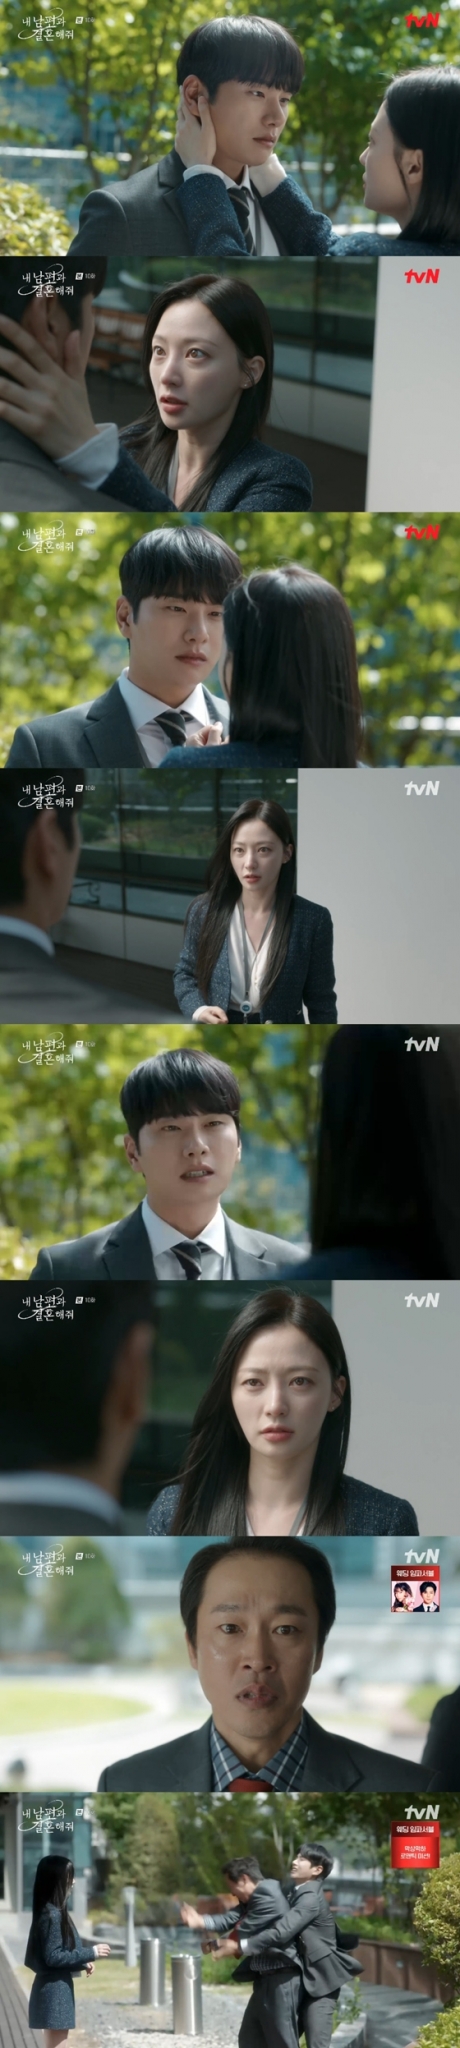 tvN 월화드라마 '내 남편과 결혼해줘' ./사진=tvN 월화드라마 '내 남편과 결혼해줘'  방송 화면 캡처